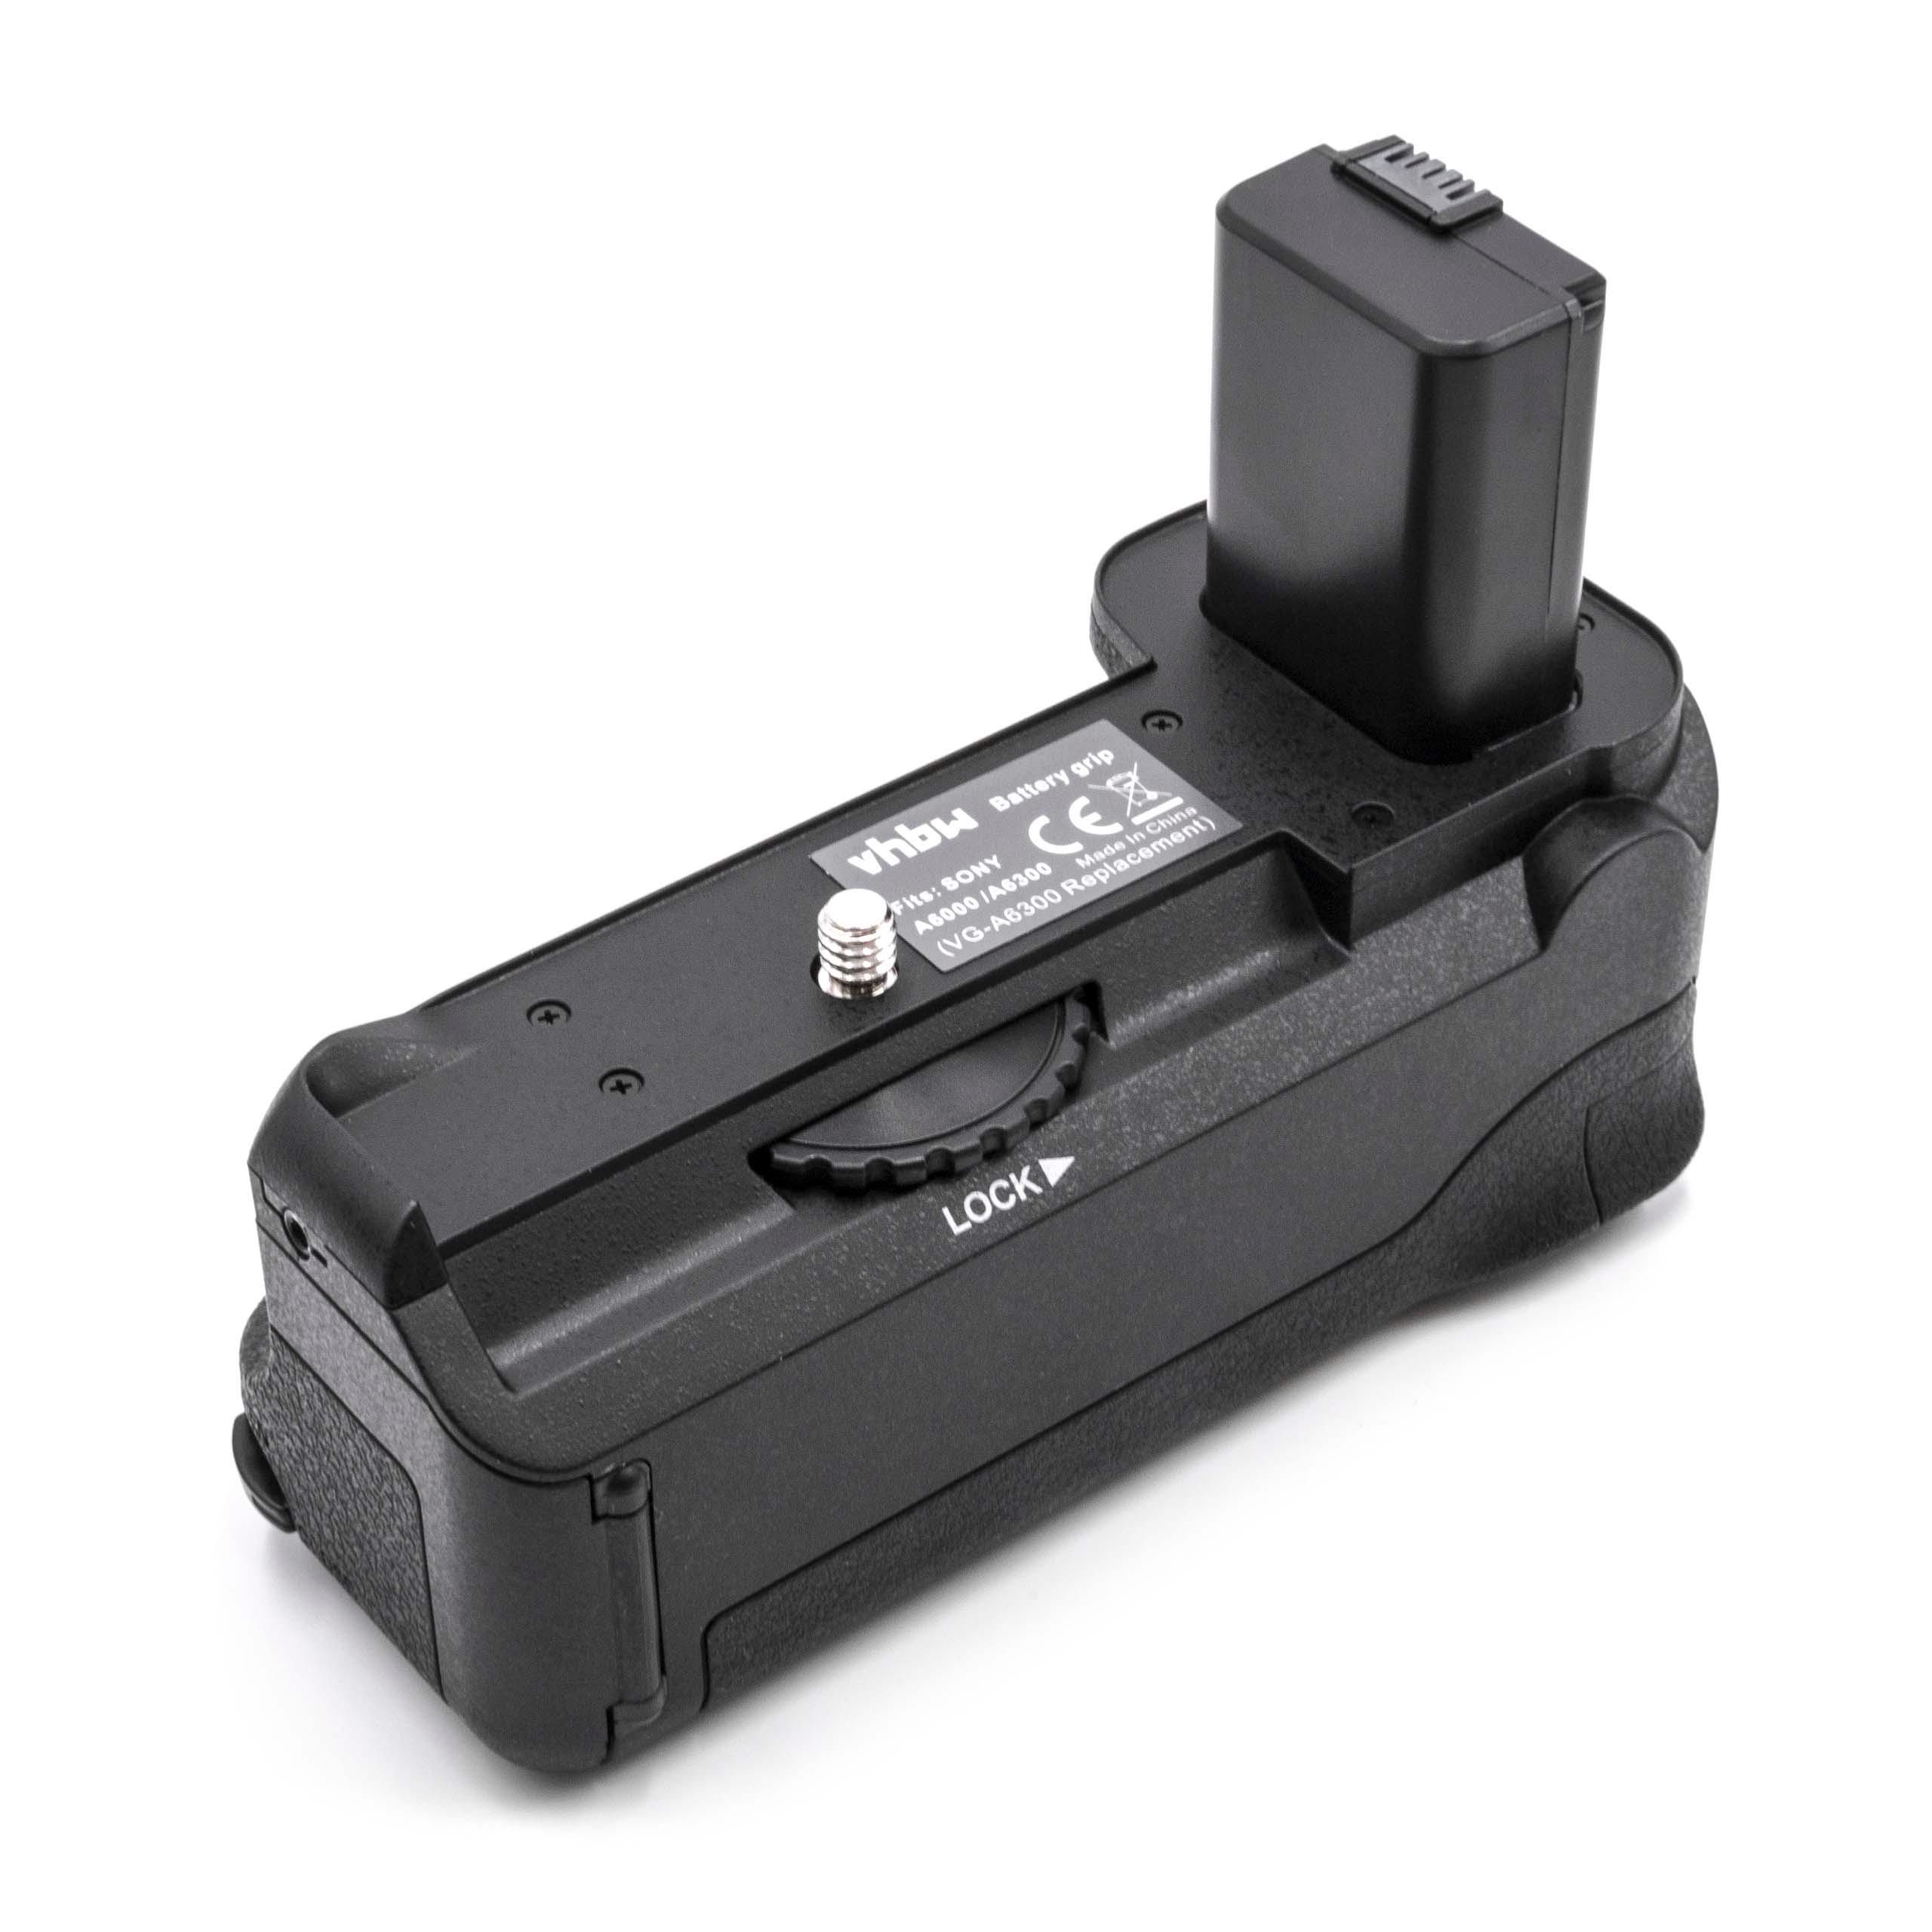 Empuñadura de batería reemplaza Sony VG-A6300 para camara Sony - incl. rueda selectora, incl. disparador